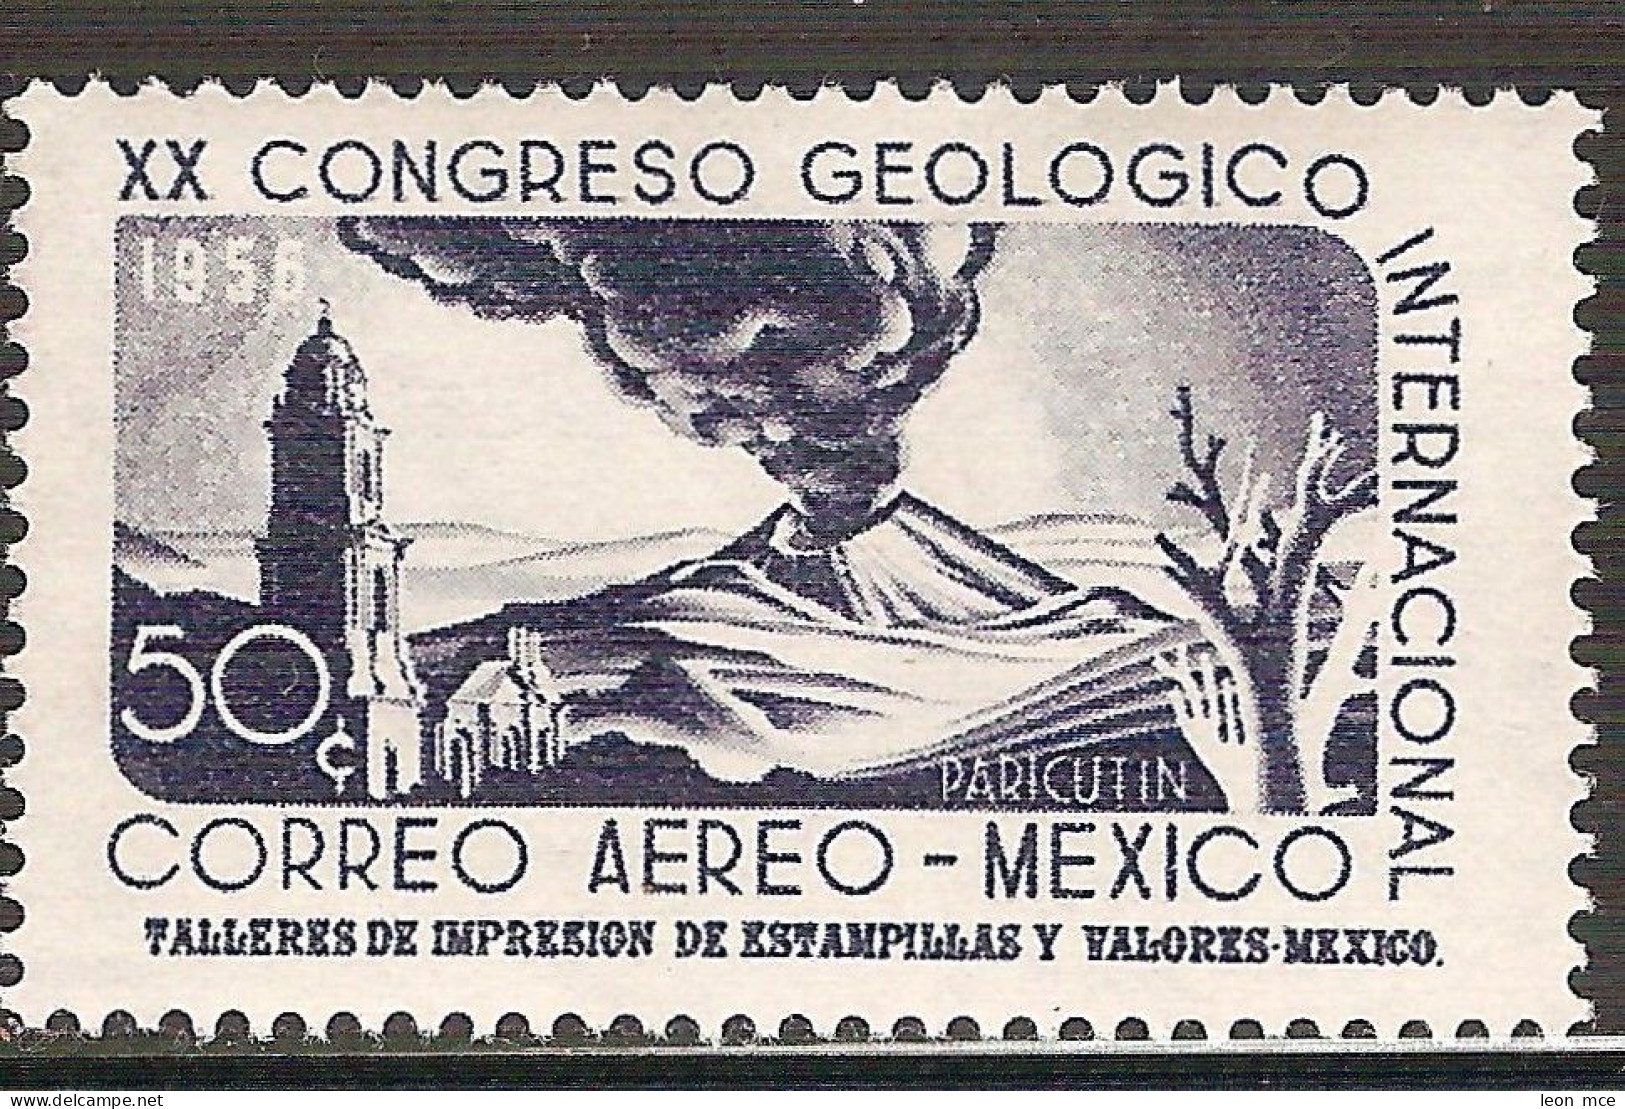 1956 MÉXICO CONGRESO GEOLOGICO INTERNACIONAL Sc. C235 MNH, VOLCANO PARICUTIN - México